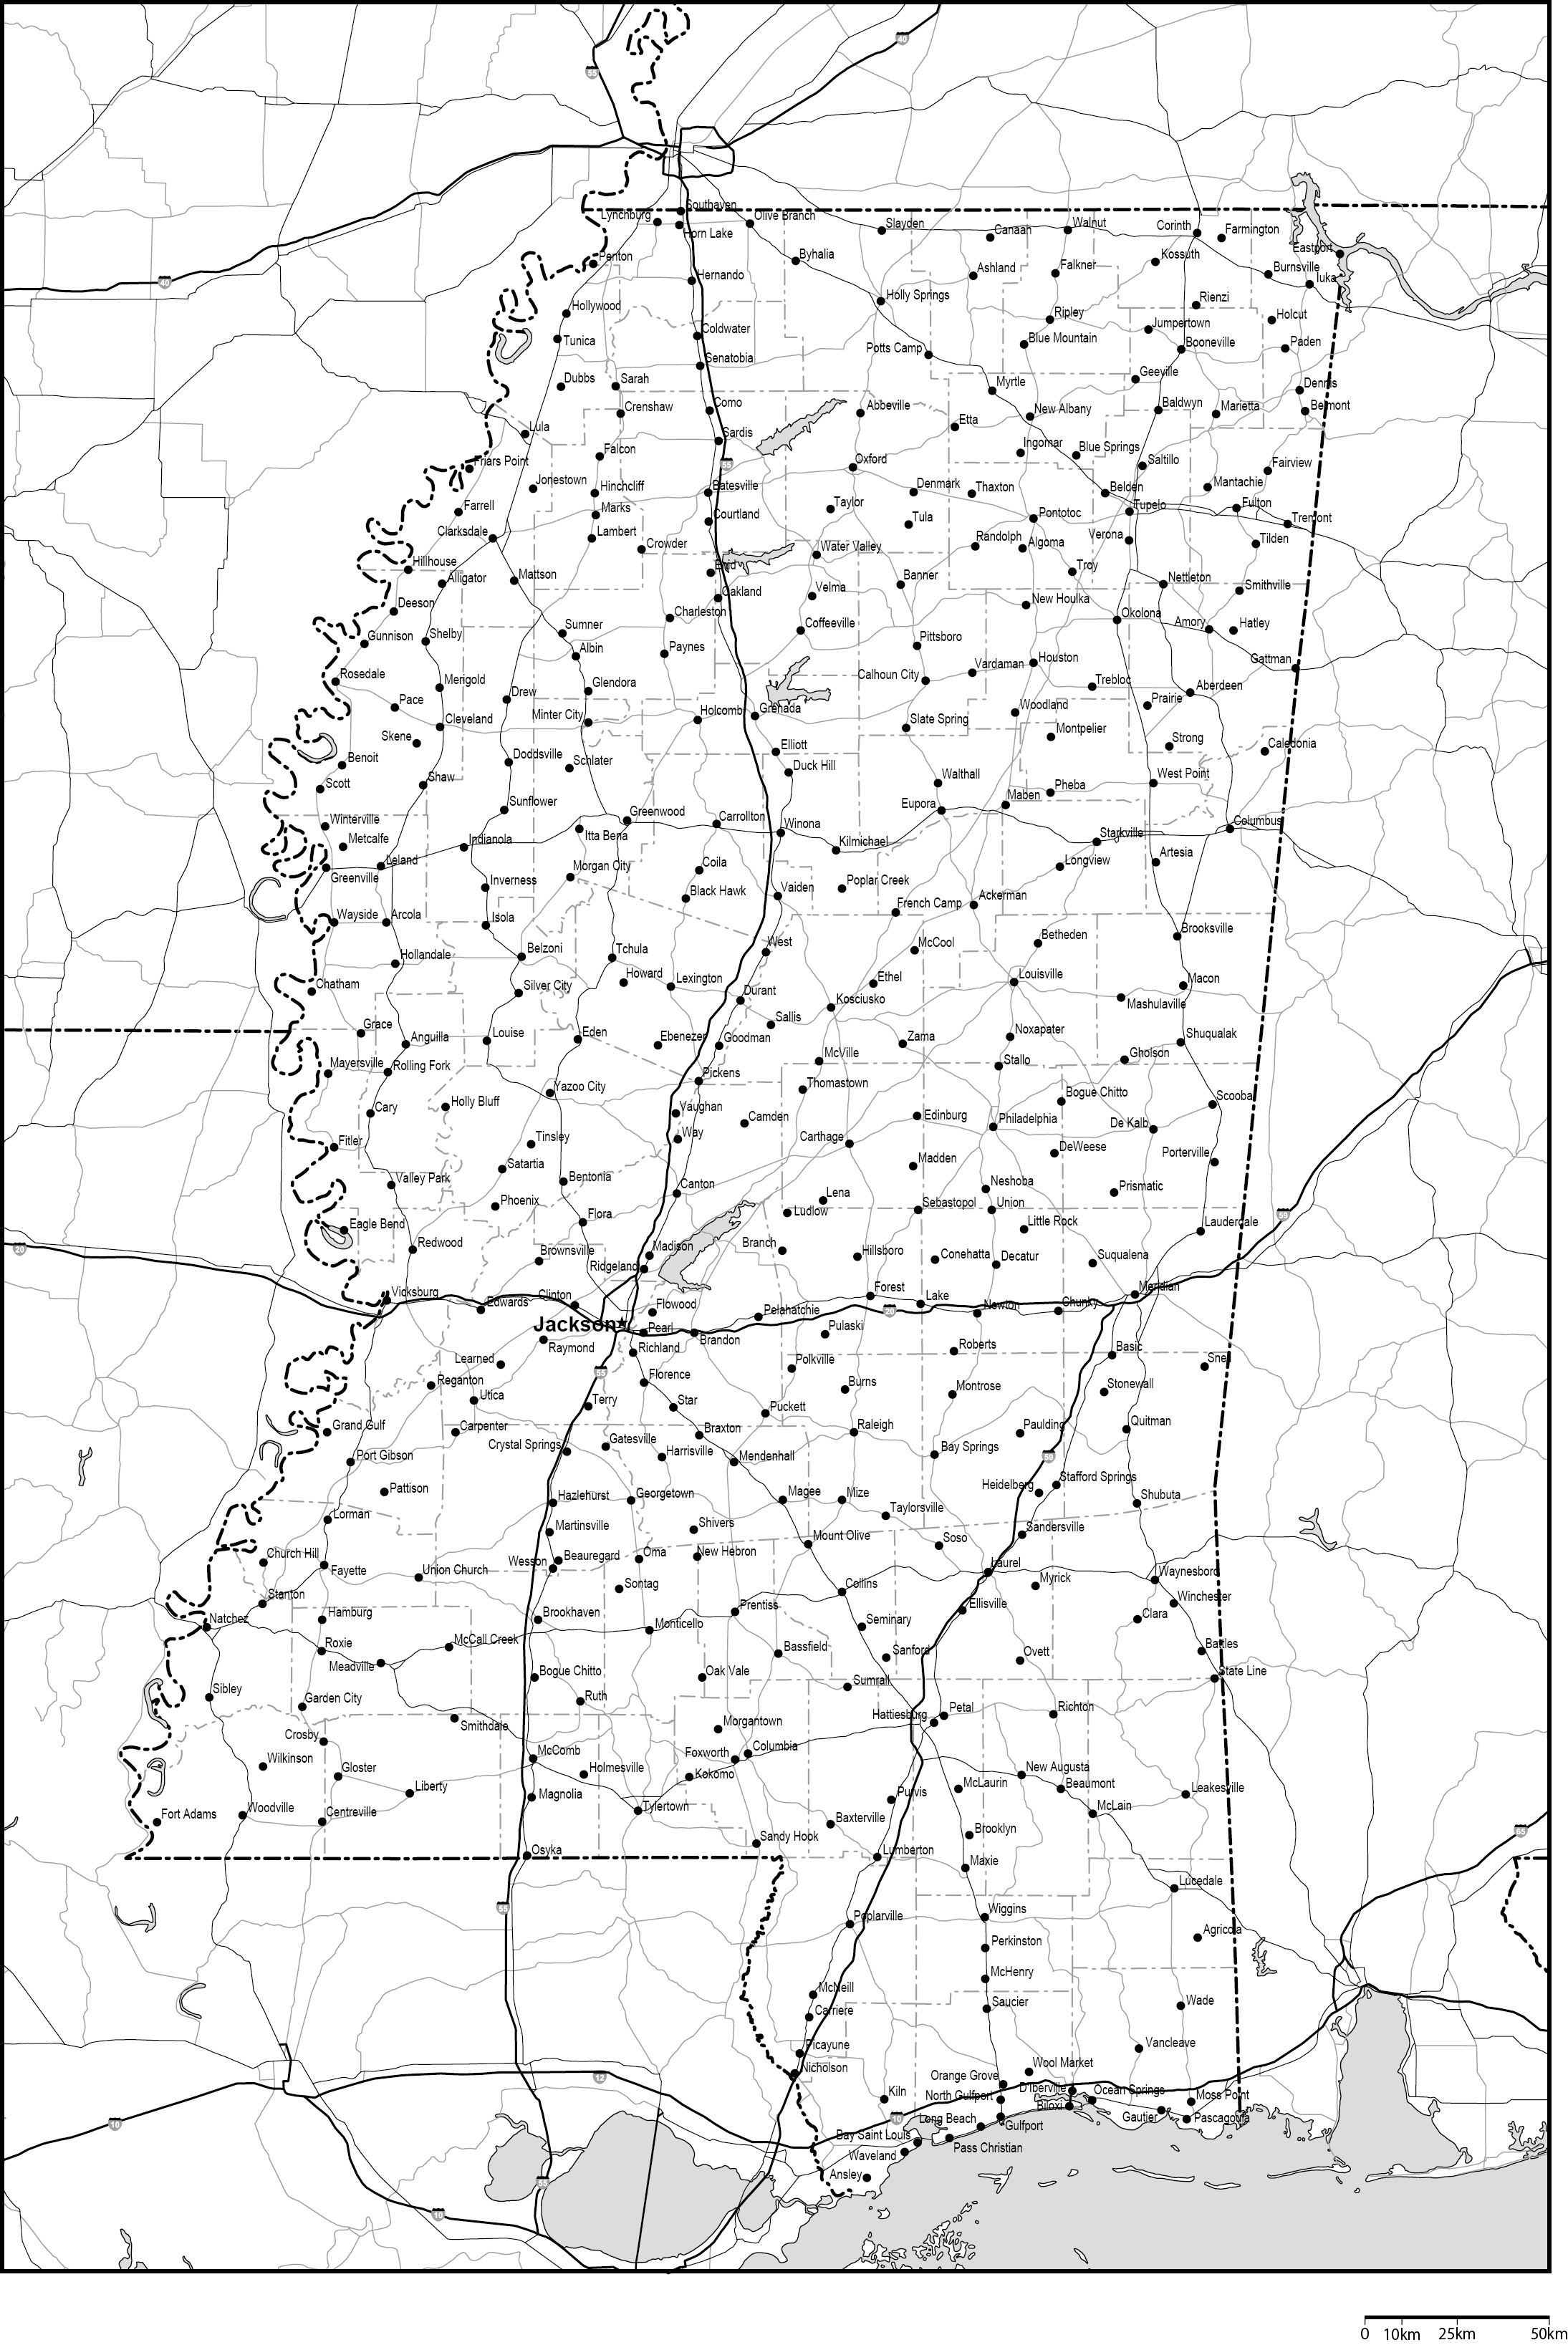 ミシシッピ州郡分け白地図州都・主な都市・道路あり(英語)フリーデータの画像